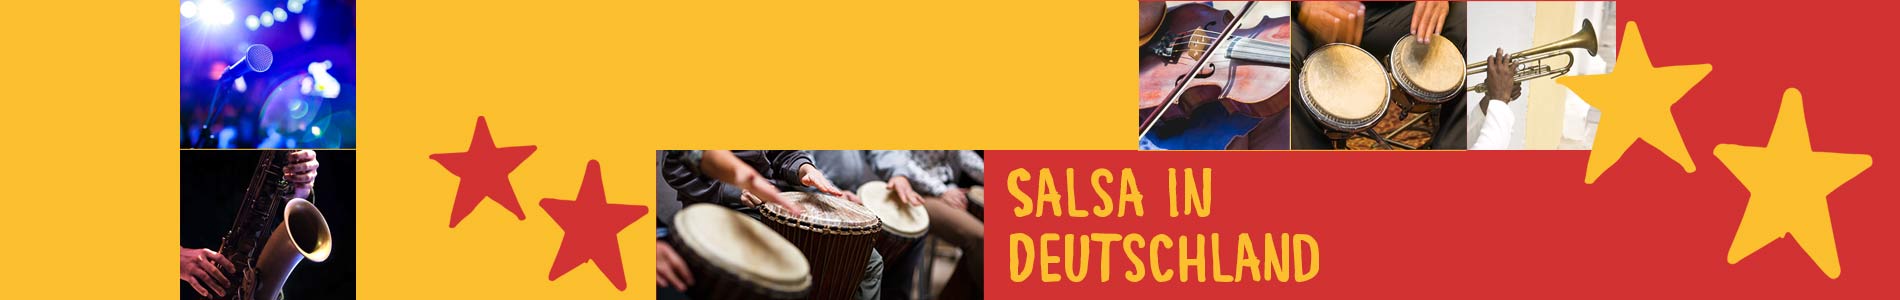 Salsa in Crostau – Salsa lernen und tanzen, Tanzkurse, Partys, Veranstaltungen